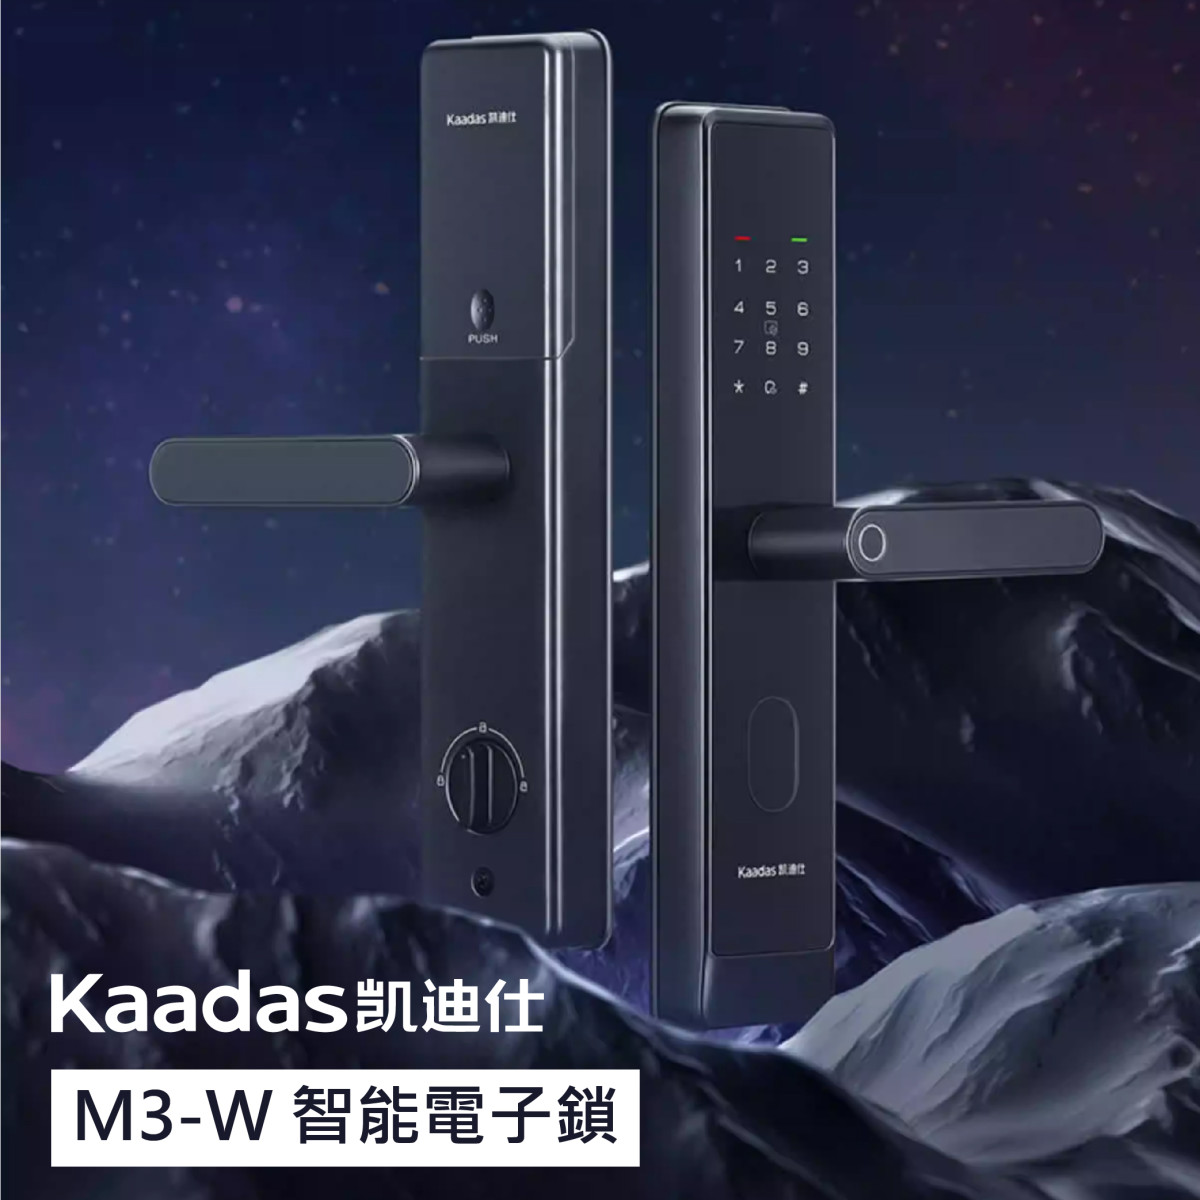 【凱迪仕Kaadas】M3-W 多元開鎖智能電子鎖 APP管理 半導體指紋 機械反鎖